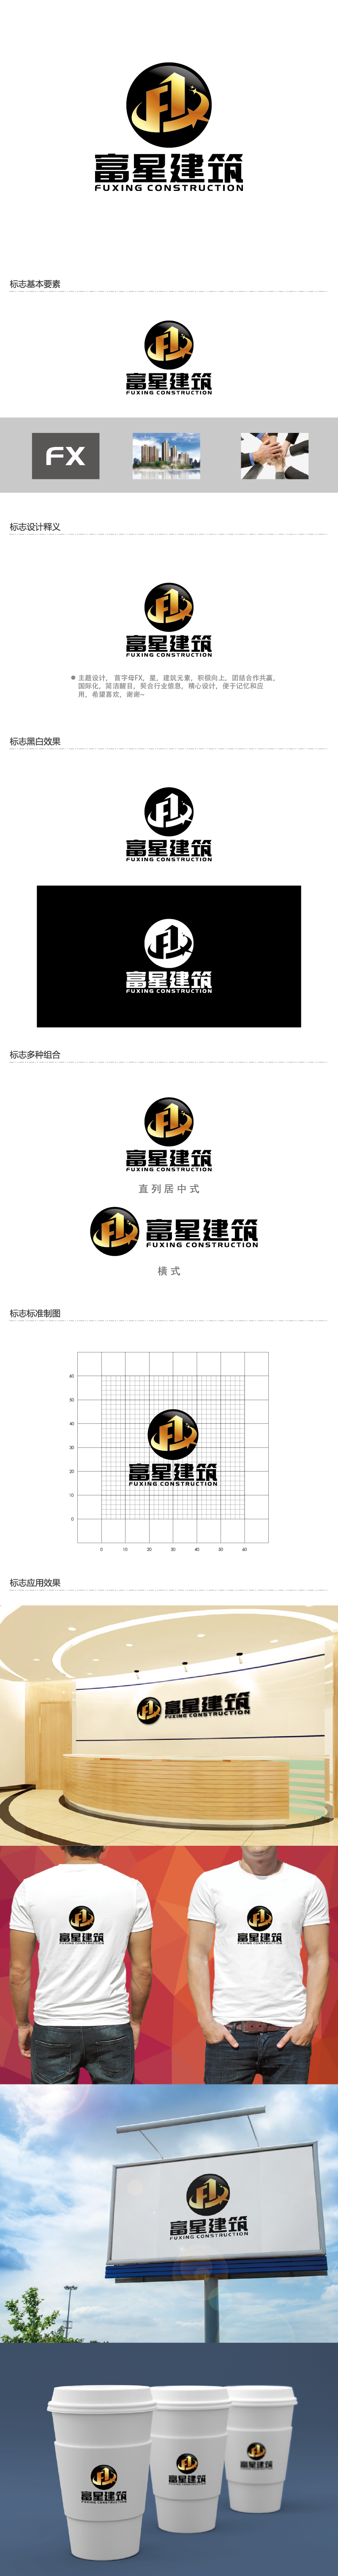 王涛的天津富星建筑工程有限公司logo设计